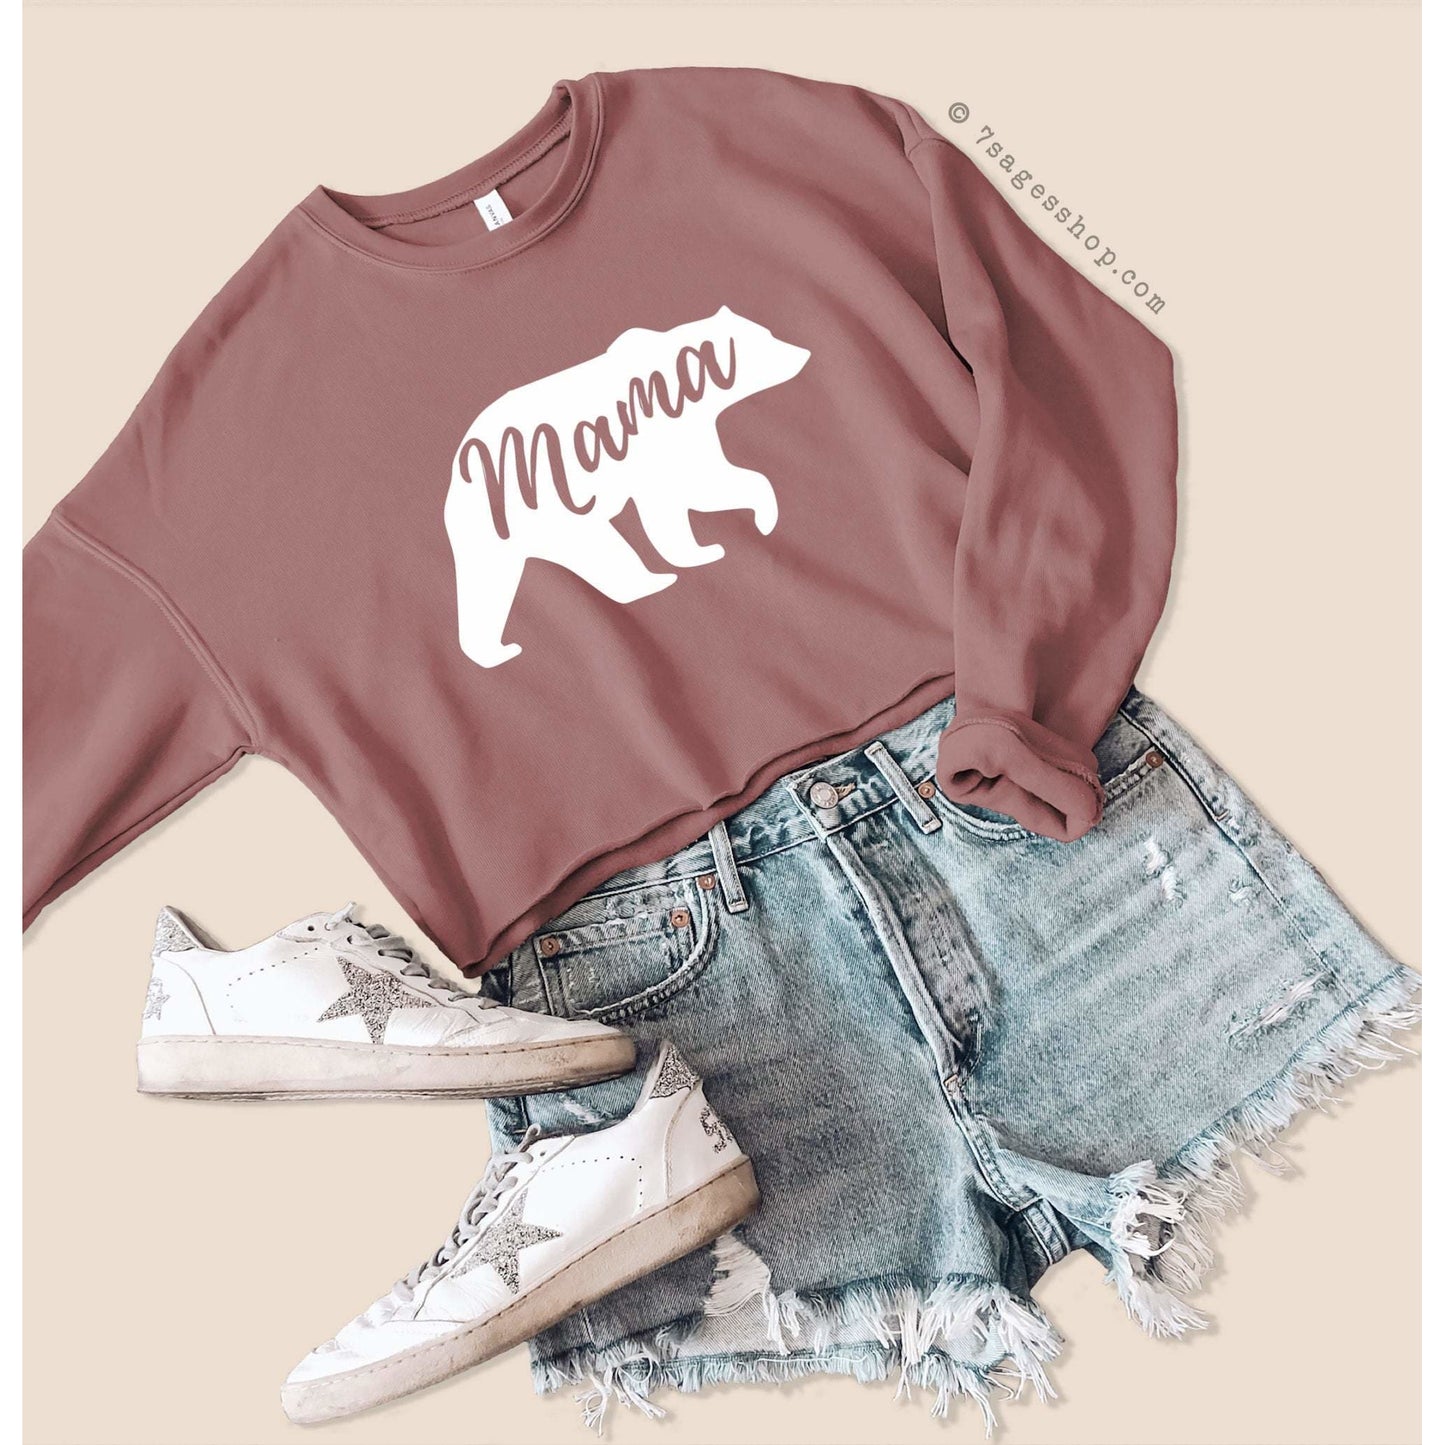 Mothers Day Gift - Mama Bear Cropped Sweatshirt - Mama Bear Sweatshirt - Mama Bear Shirts - Mothers Day Sweatshirt - Fleece Sweatshirt